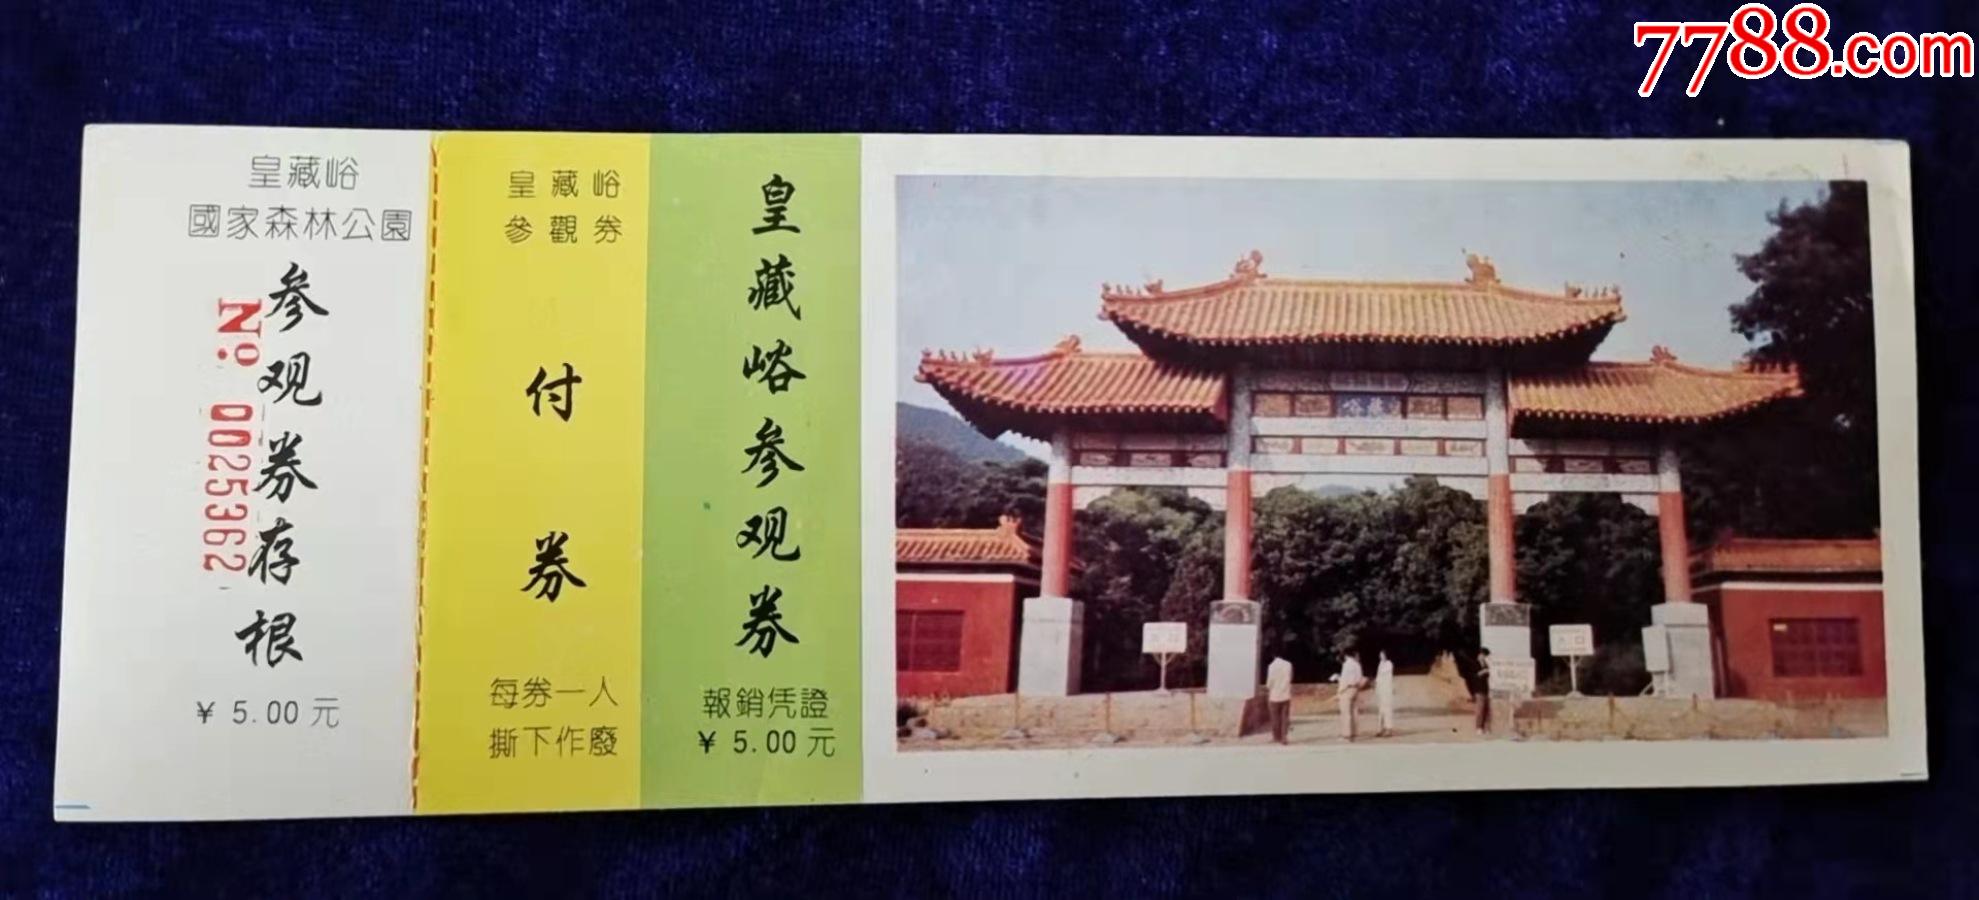 萧县皇藏峪门票图片